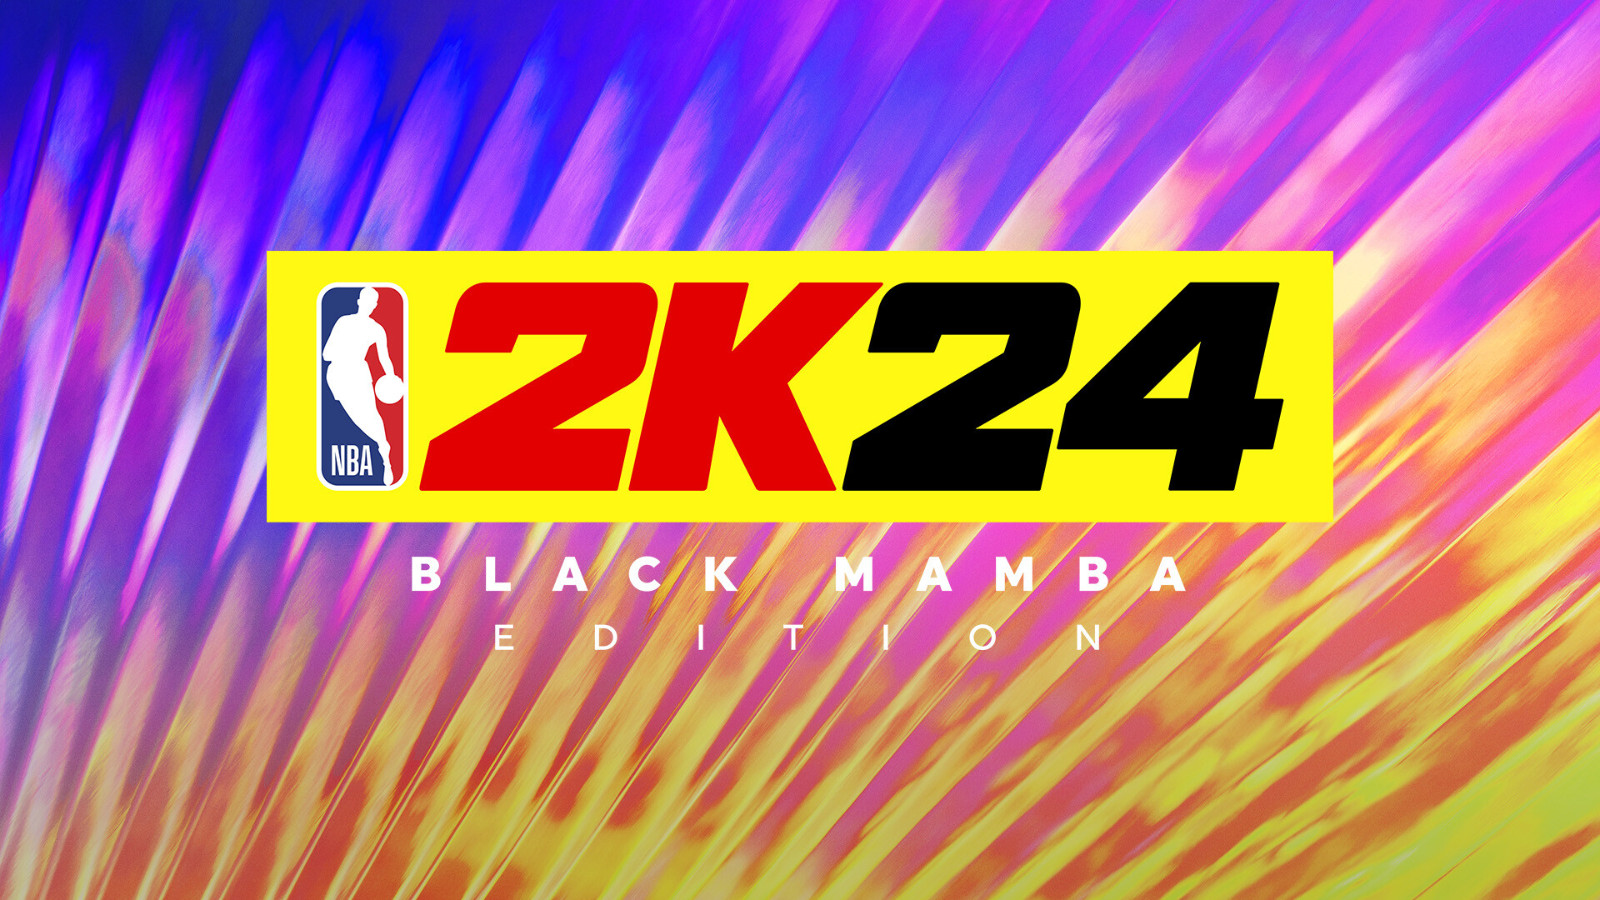 《NBA 2K24》Steam页面上线 国区售价199元